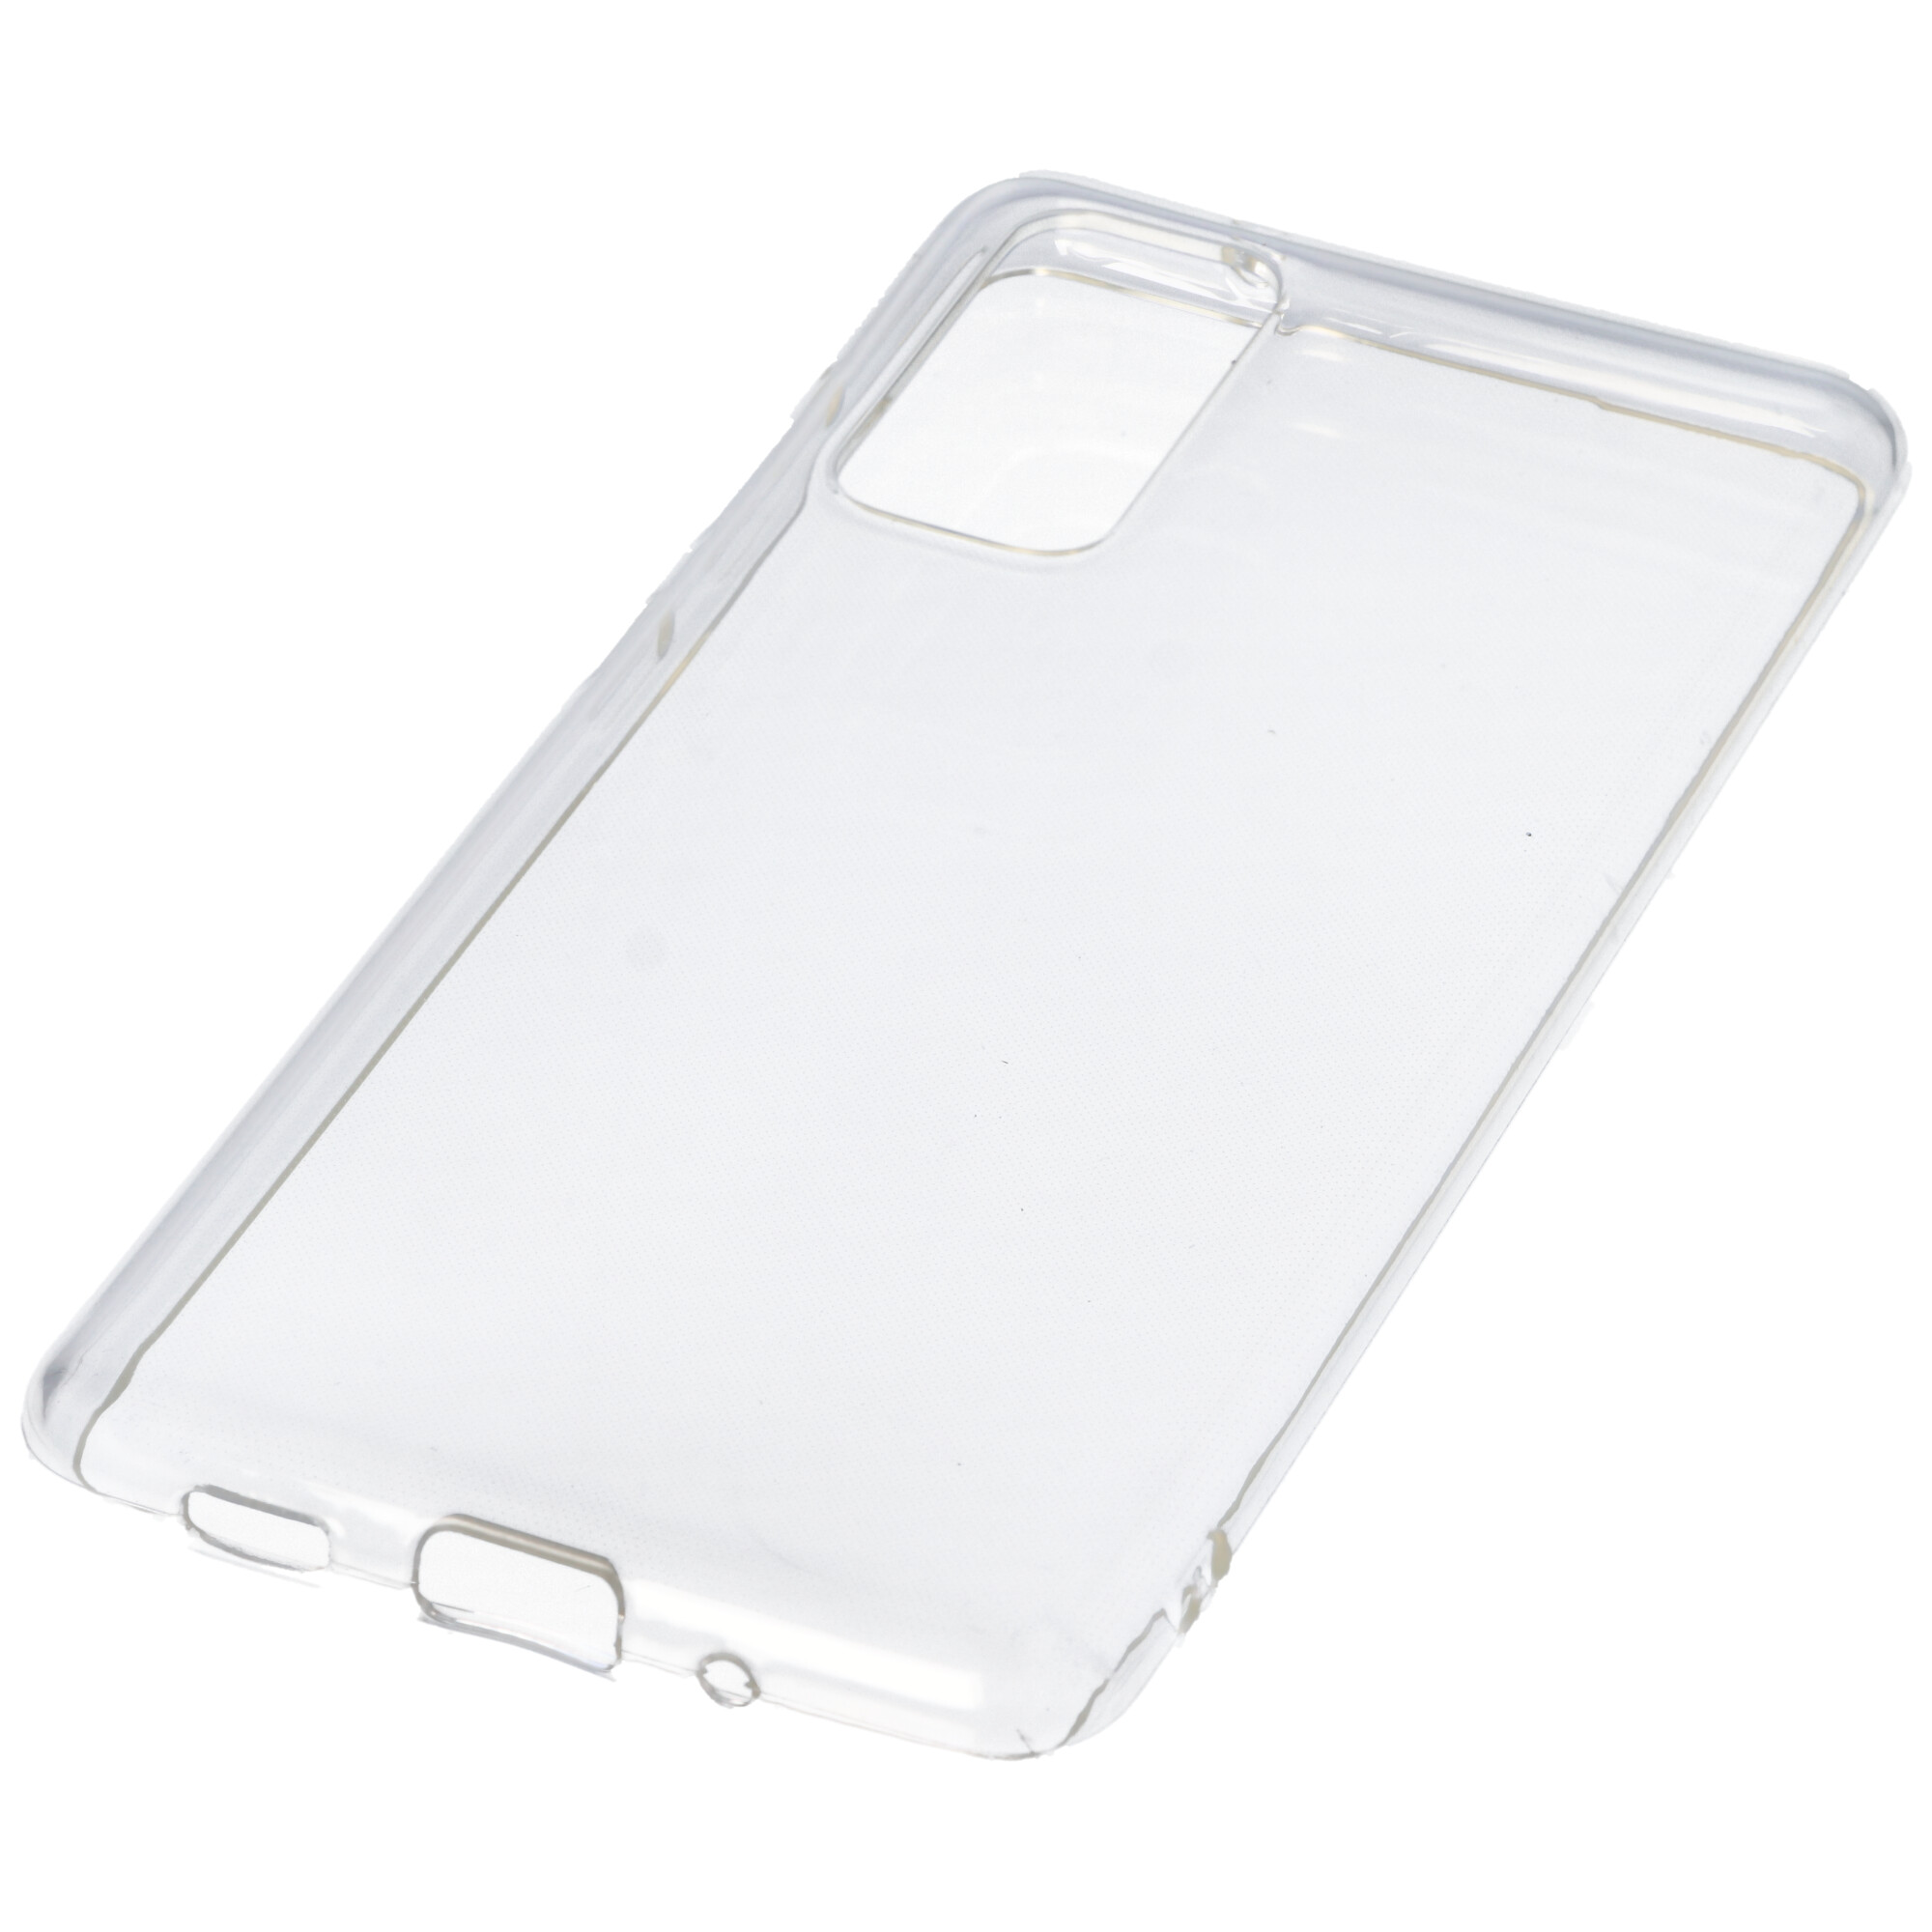 Hülle passend für Samsung Galaxy S20 FE - transparente Schutzhülle, Anti-Gelb Luftkissen Fallschutz Silikon Handyhülle robustes TPU Case